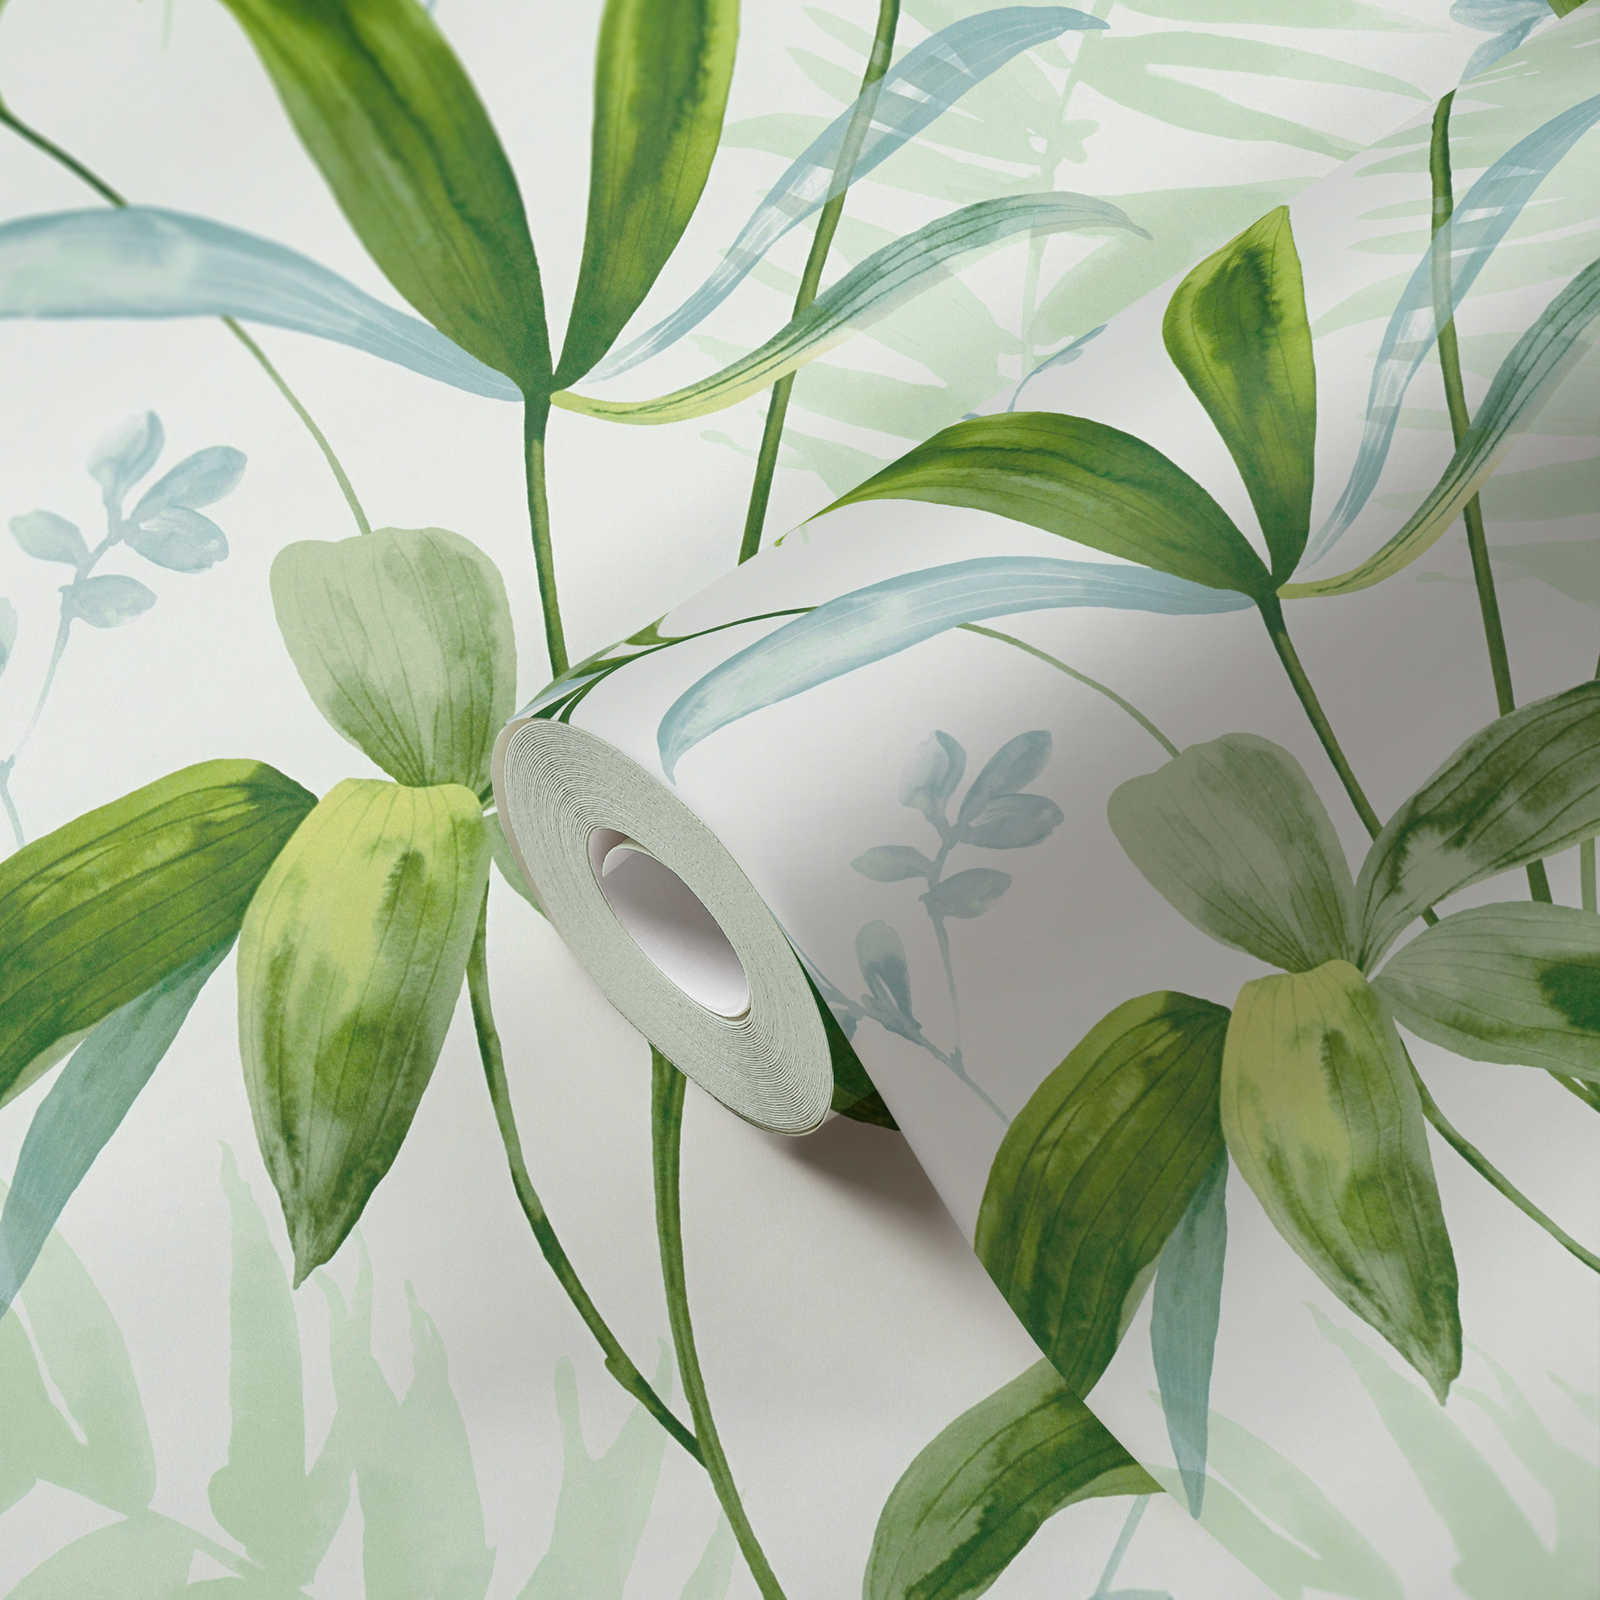             Papier peint intissé feuilles vertes style aquarelle - vert, blanc
        